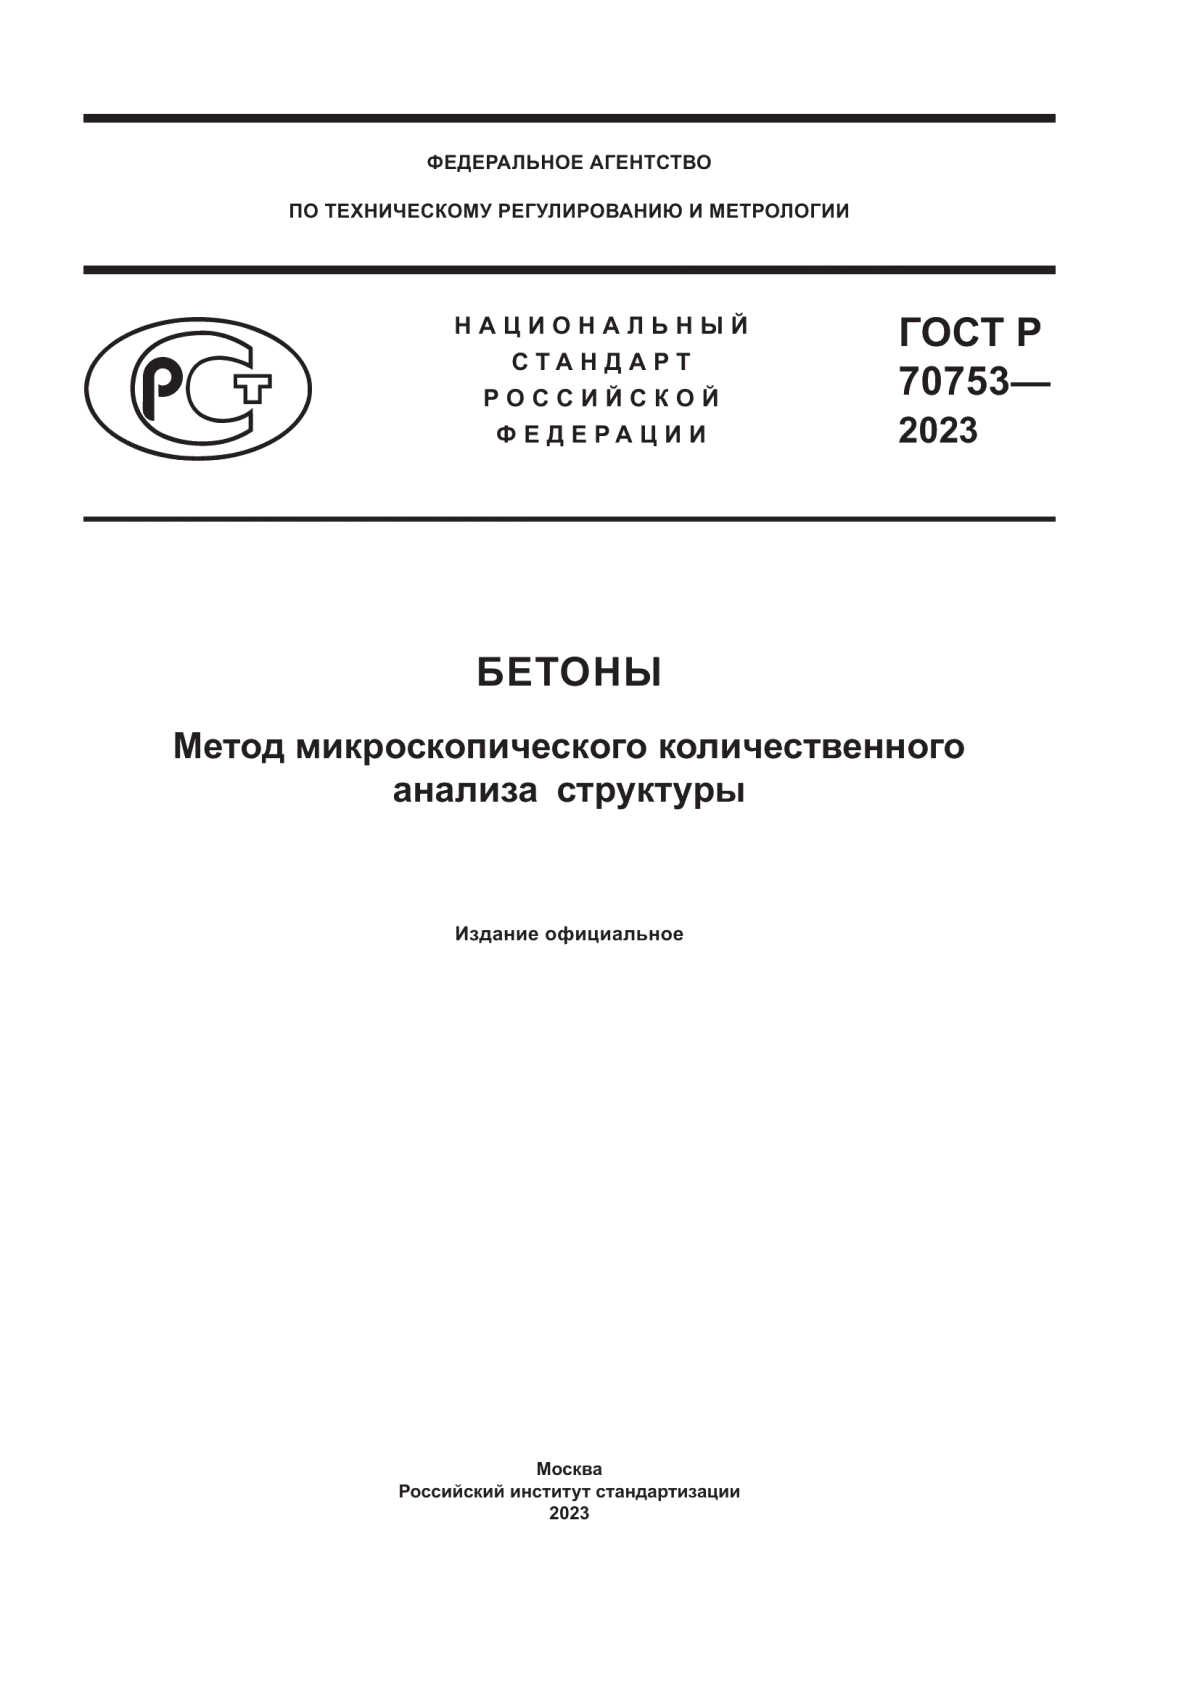 ГОСТ Р 70753-2023 Бетоны. Метод микроскопического количественного анализа структуры